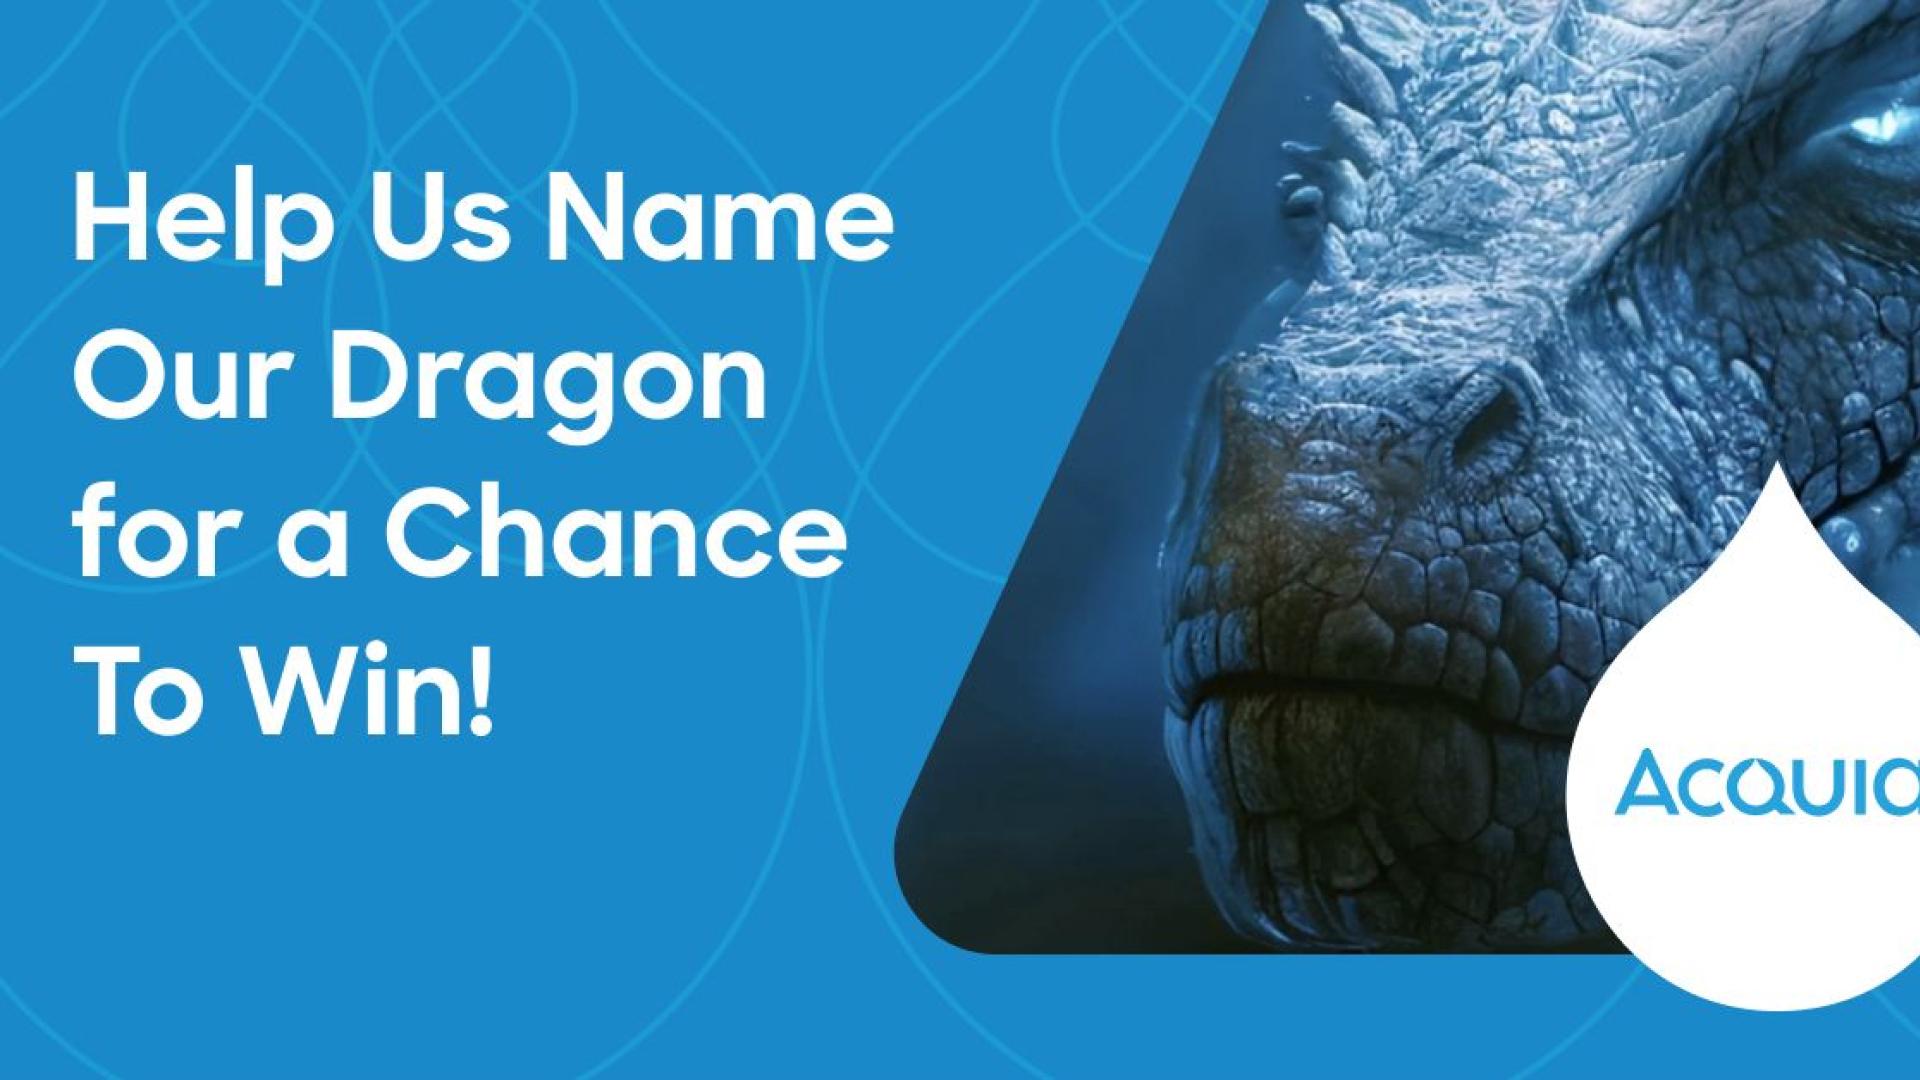 Name the Dragon